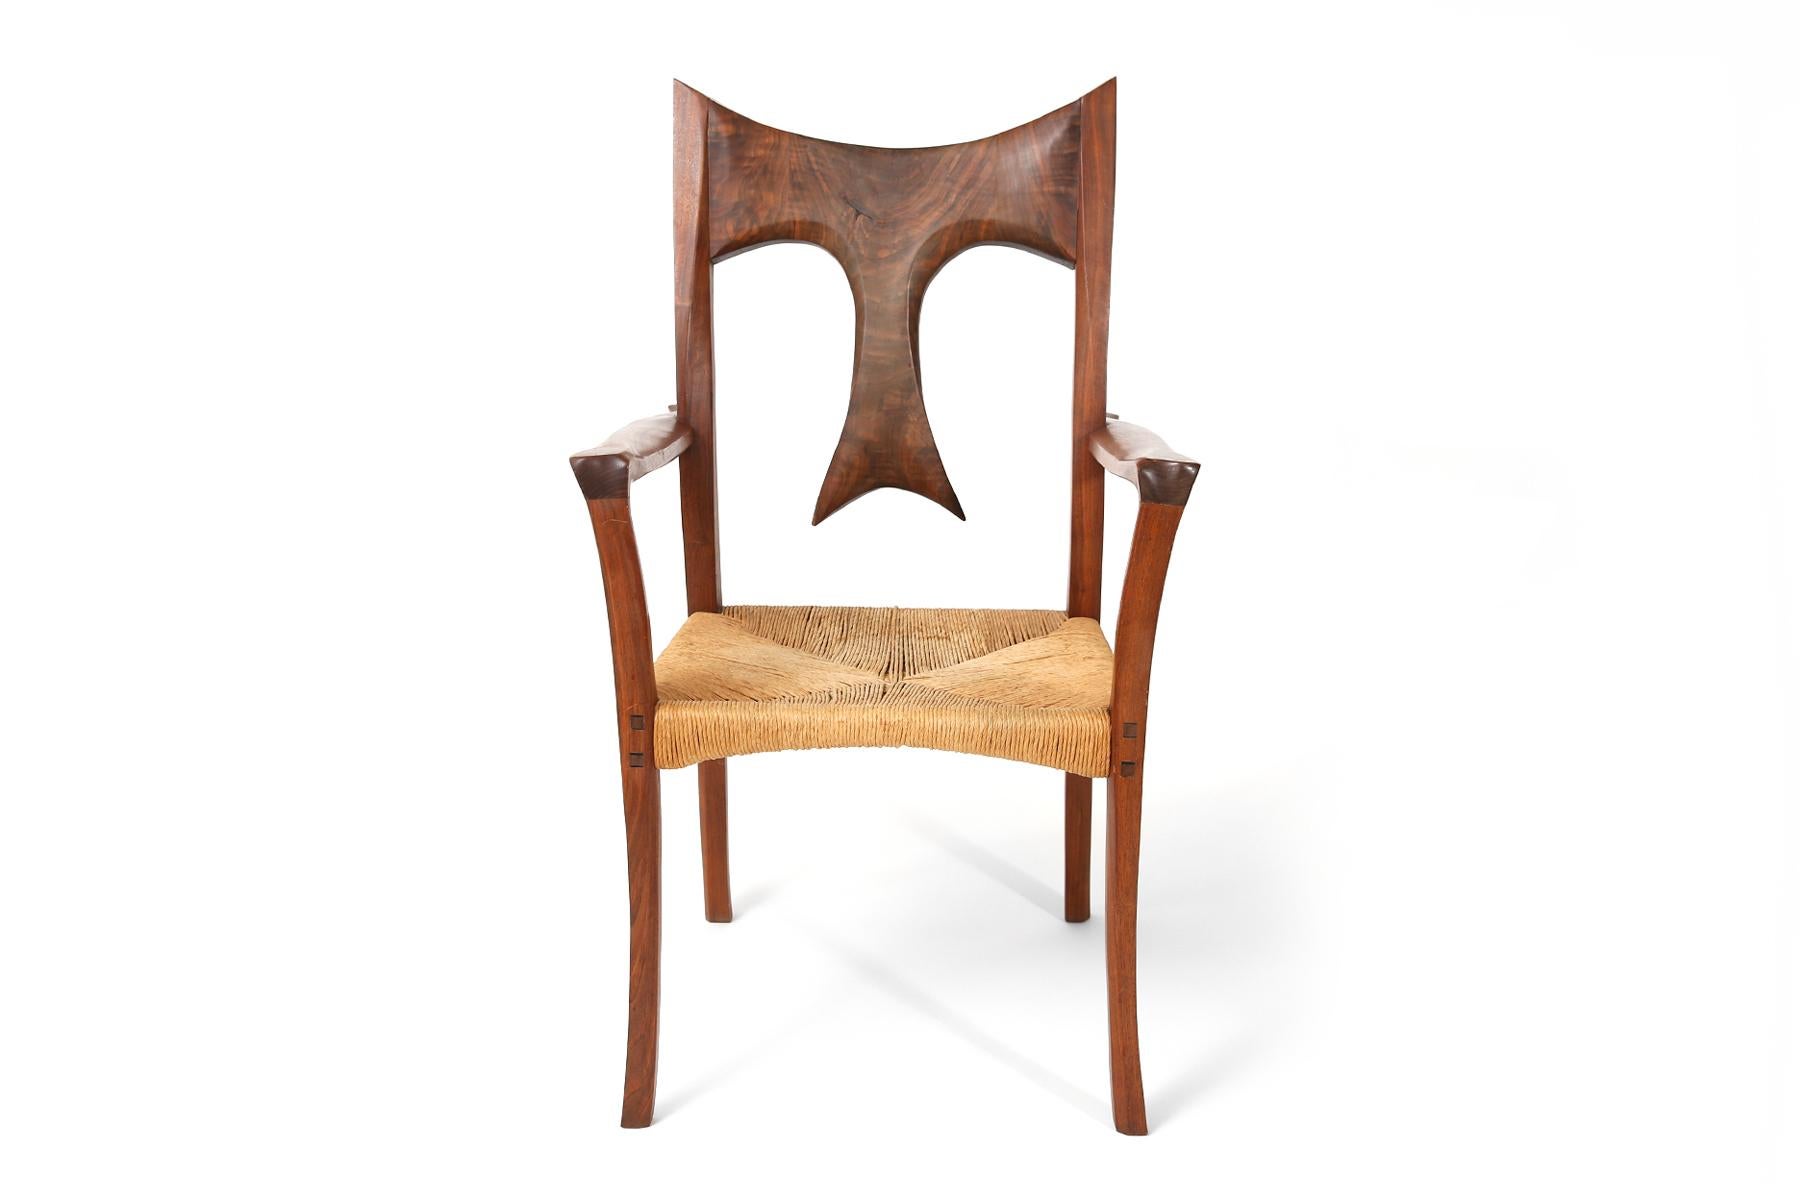 Atemberaubender Studio-Sessel aus massivem Walnussholz und Raffiabast, Ende der 1970er Jahre. Dieses skulpturale Exemplar hat eine ungewöhnliche handgefertigte Rückenlehne, schön geformte Arme und meisterhafte Tischlerarbeiten.